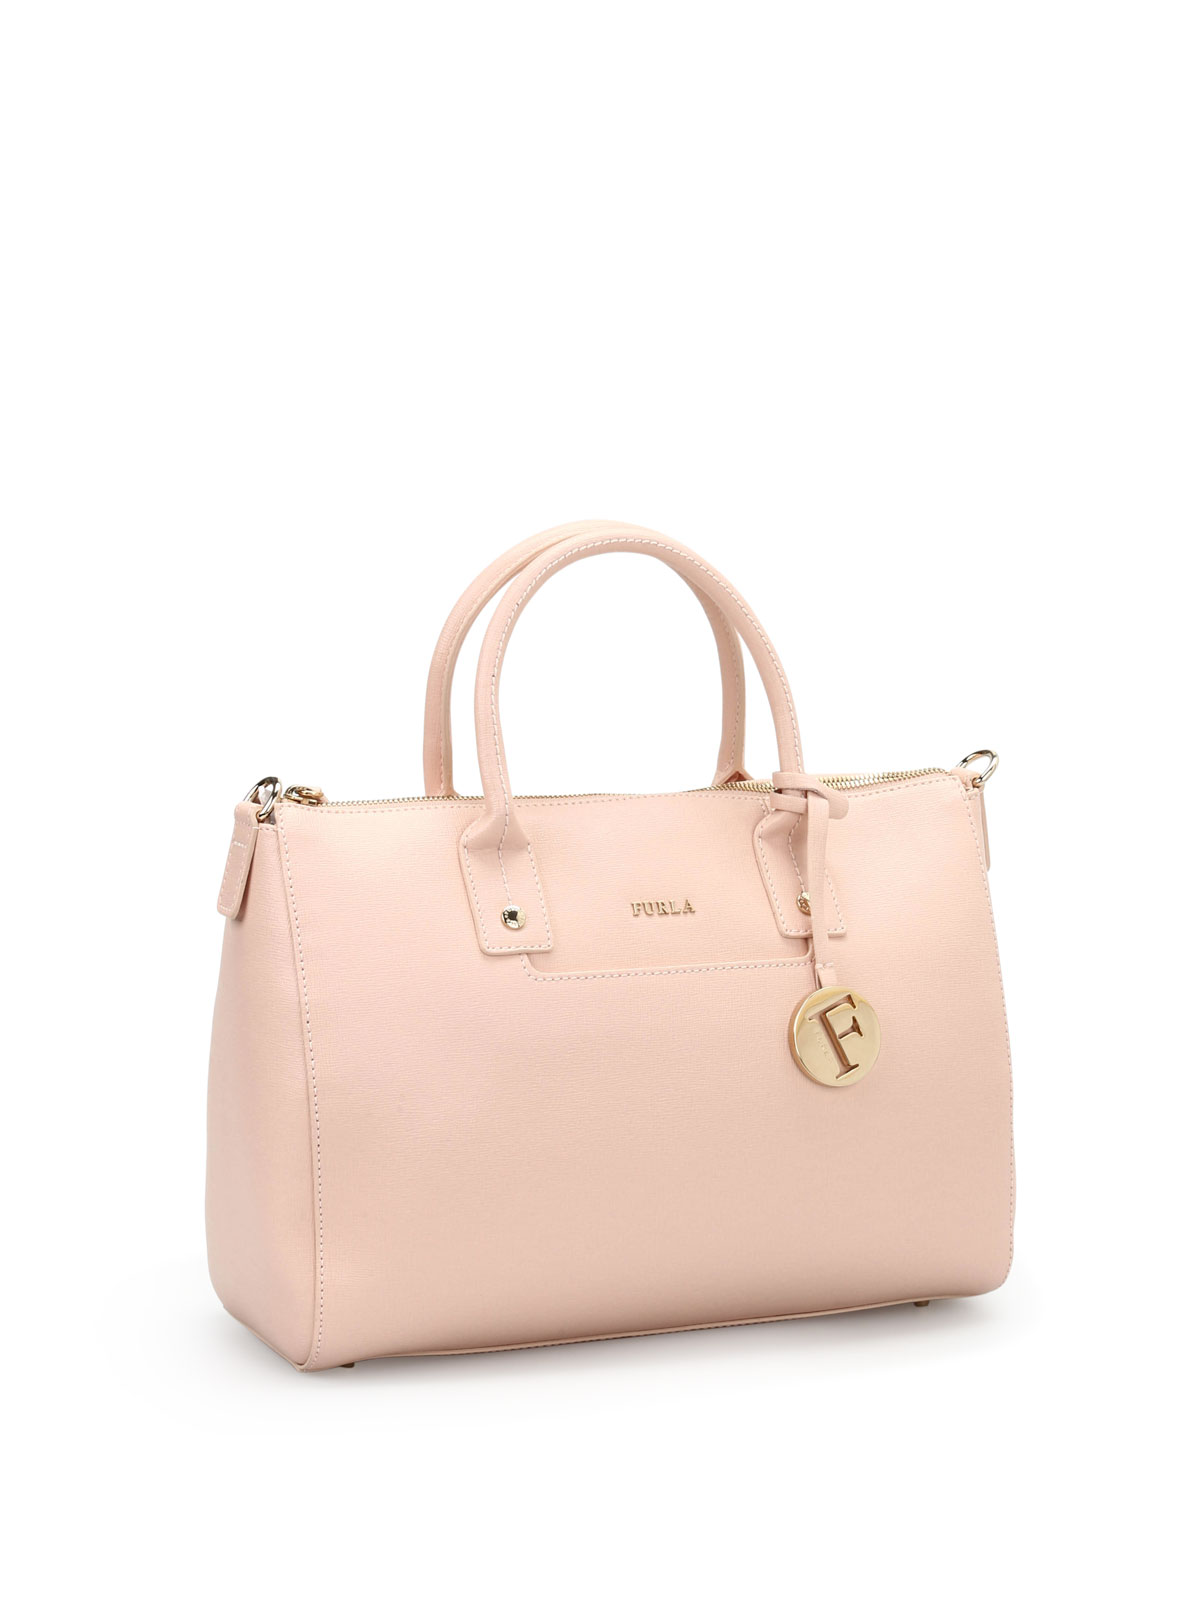 Linda handbag by Furla - bowling bags | Shop online at iKRIX.com ...